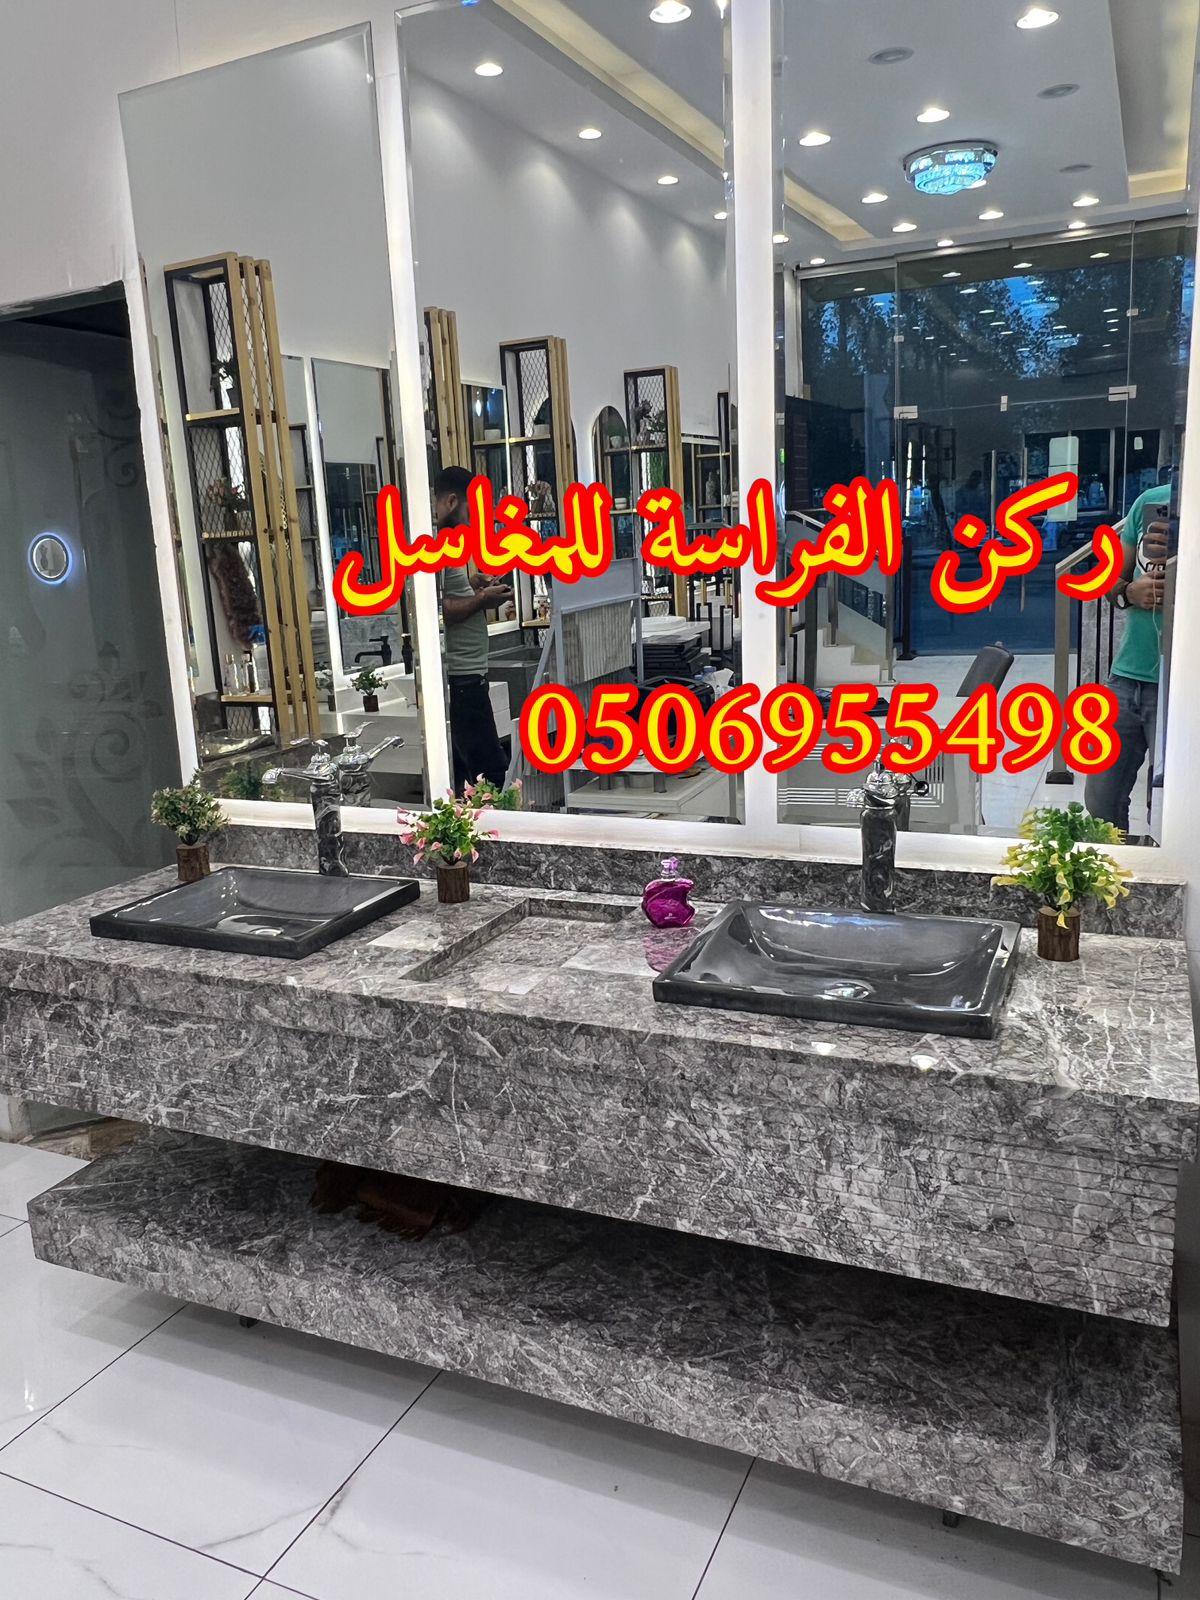 الرياض - احواض مغاسل رخام في الرياض,0506955498 271194414